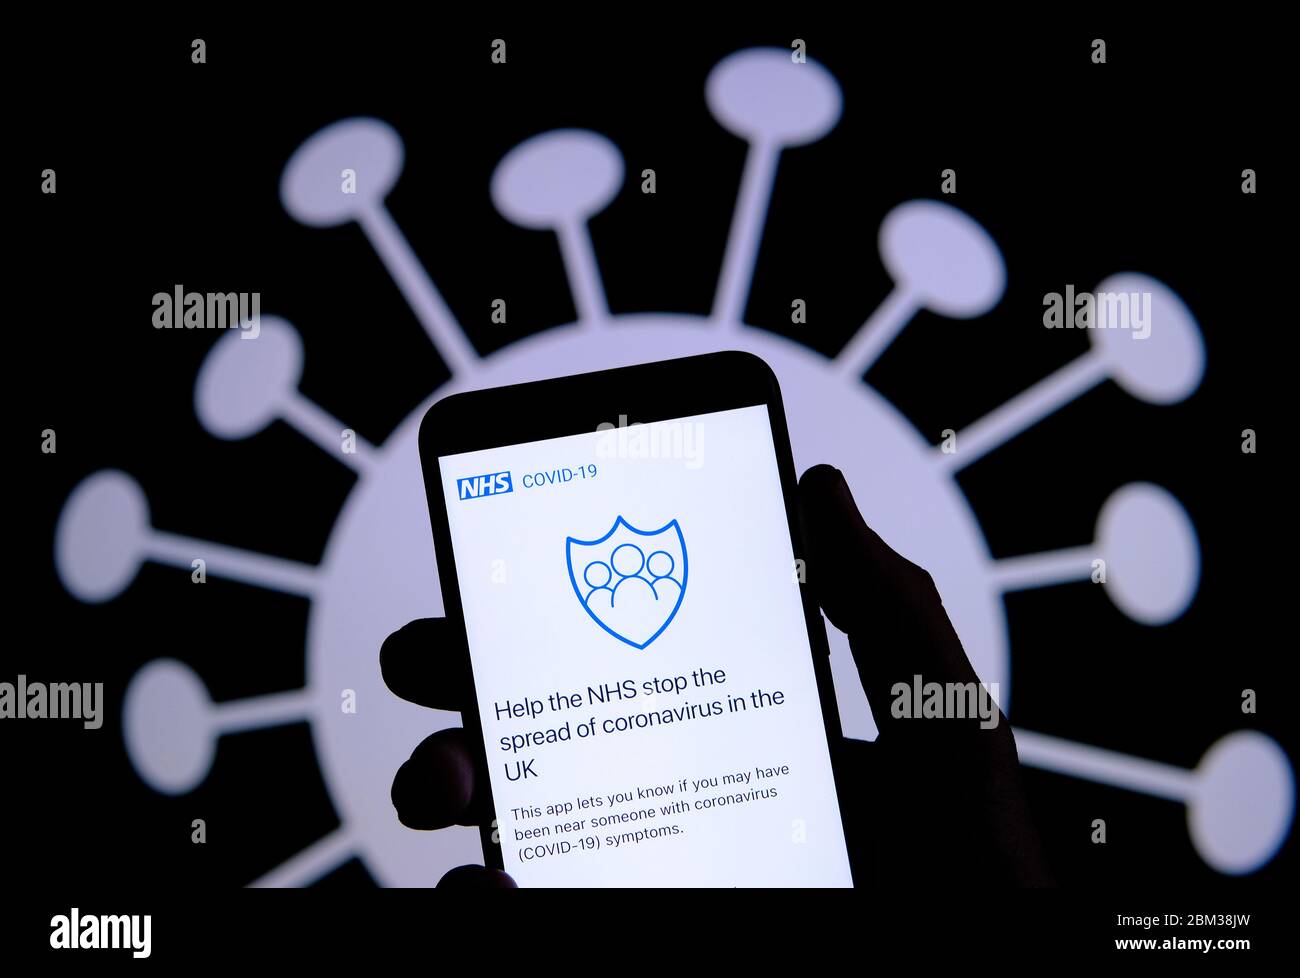 Stone / Royaume-Uni - Mai 6 2020: NHS COVID-19 contact-tracing app sur la silhouette de smartphone tenir dans une main. Image du coronavirus sur l'ba floue Banque D'Images